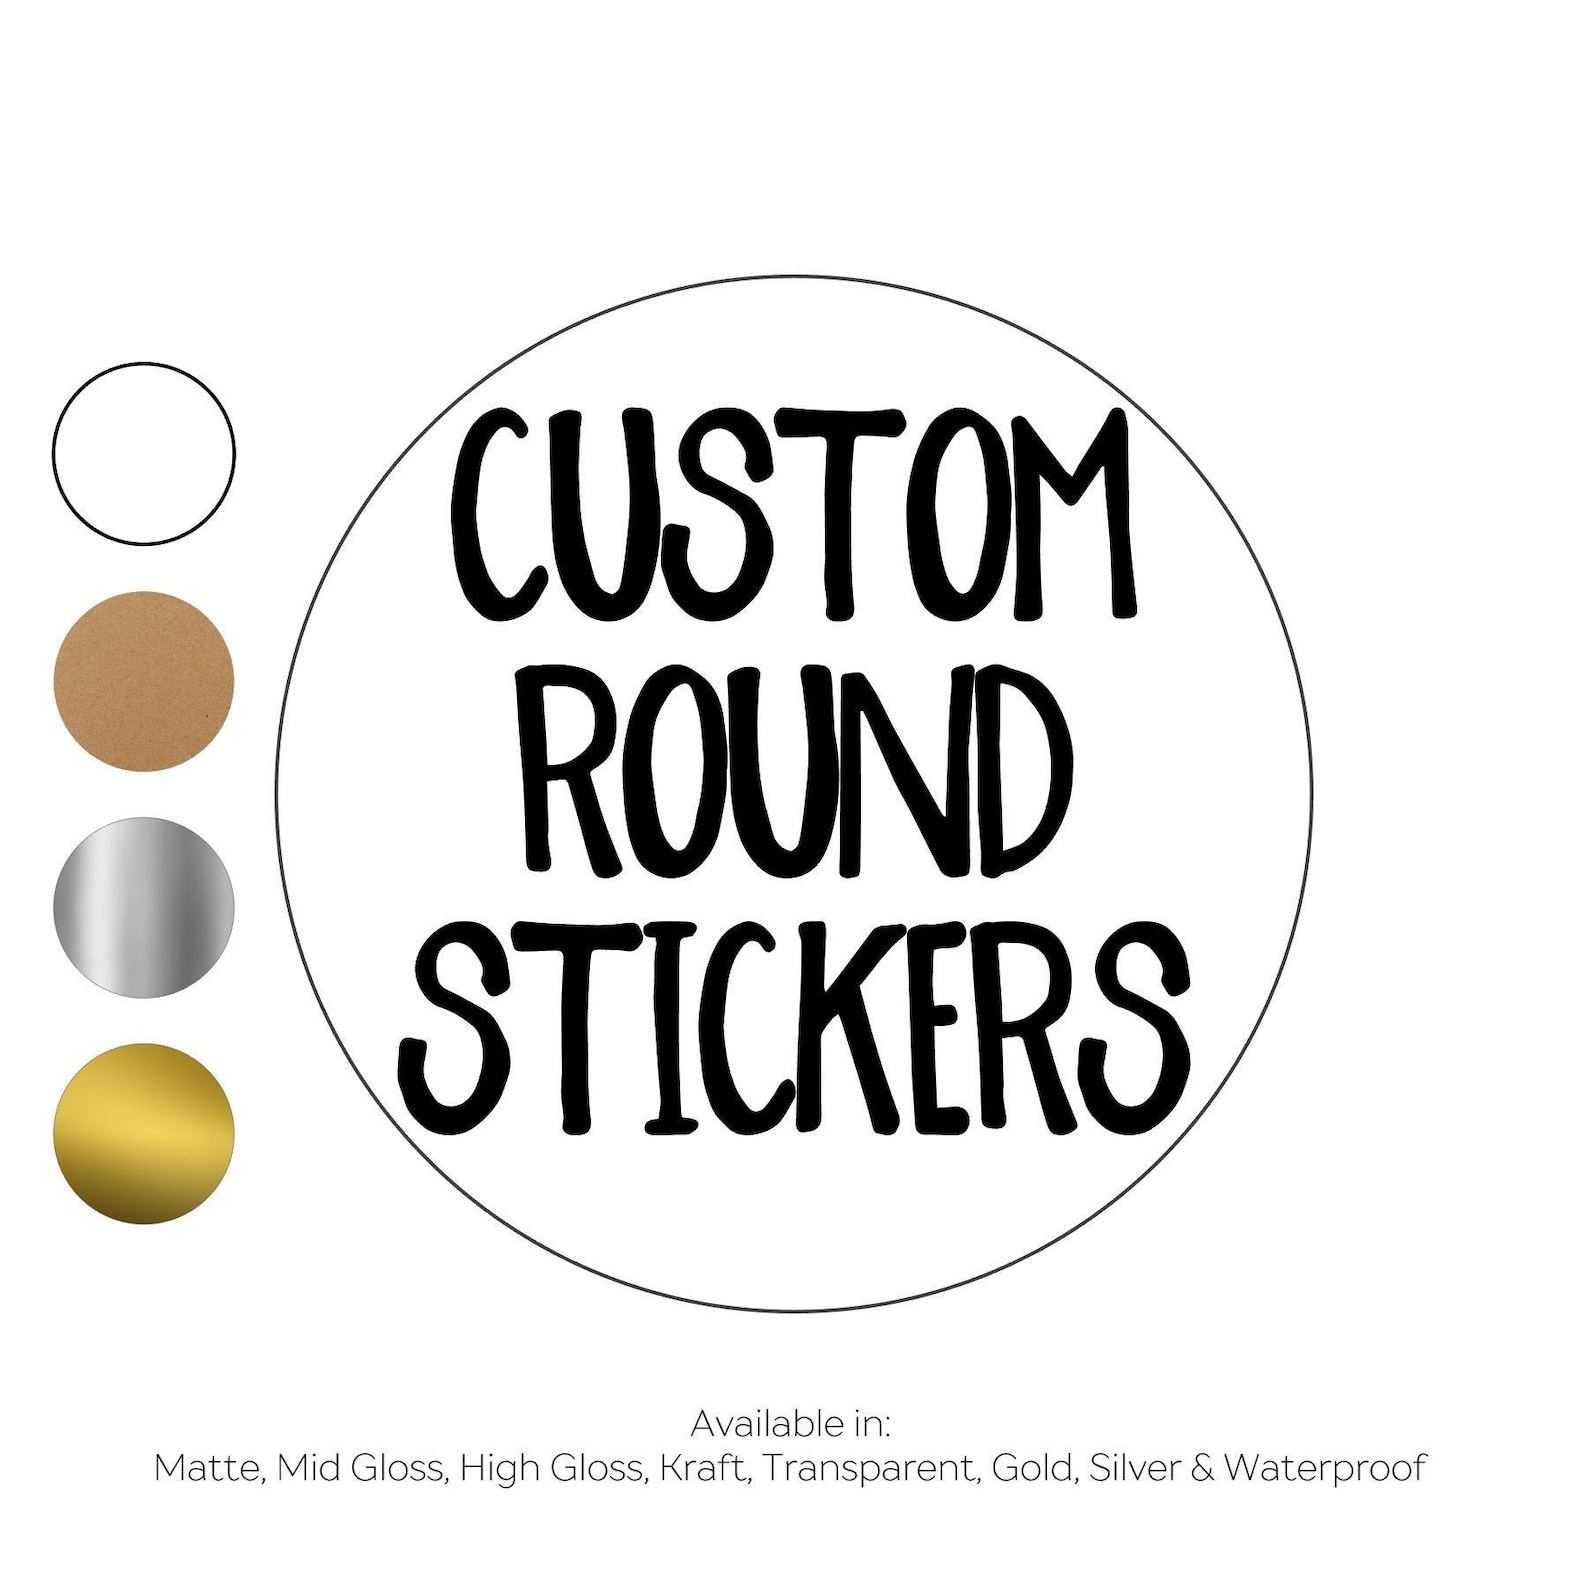 Custom round. Round Sticker. Custom 1 inch Round Stickers. Clear Sticker.